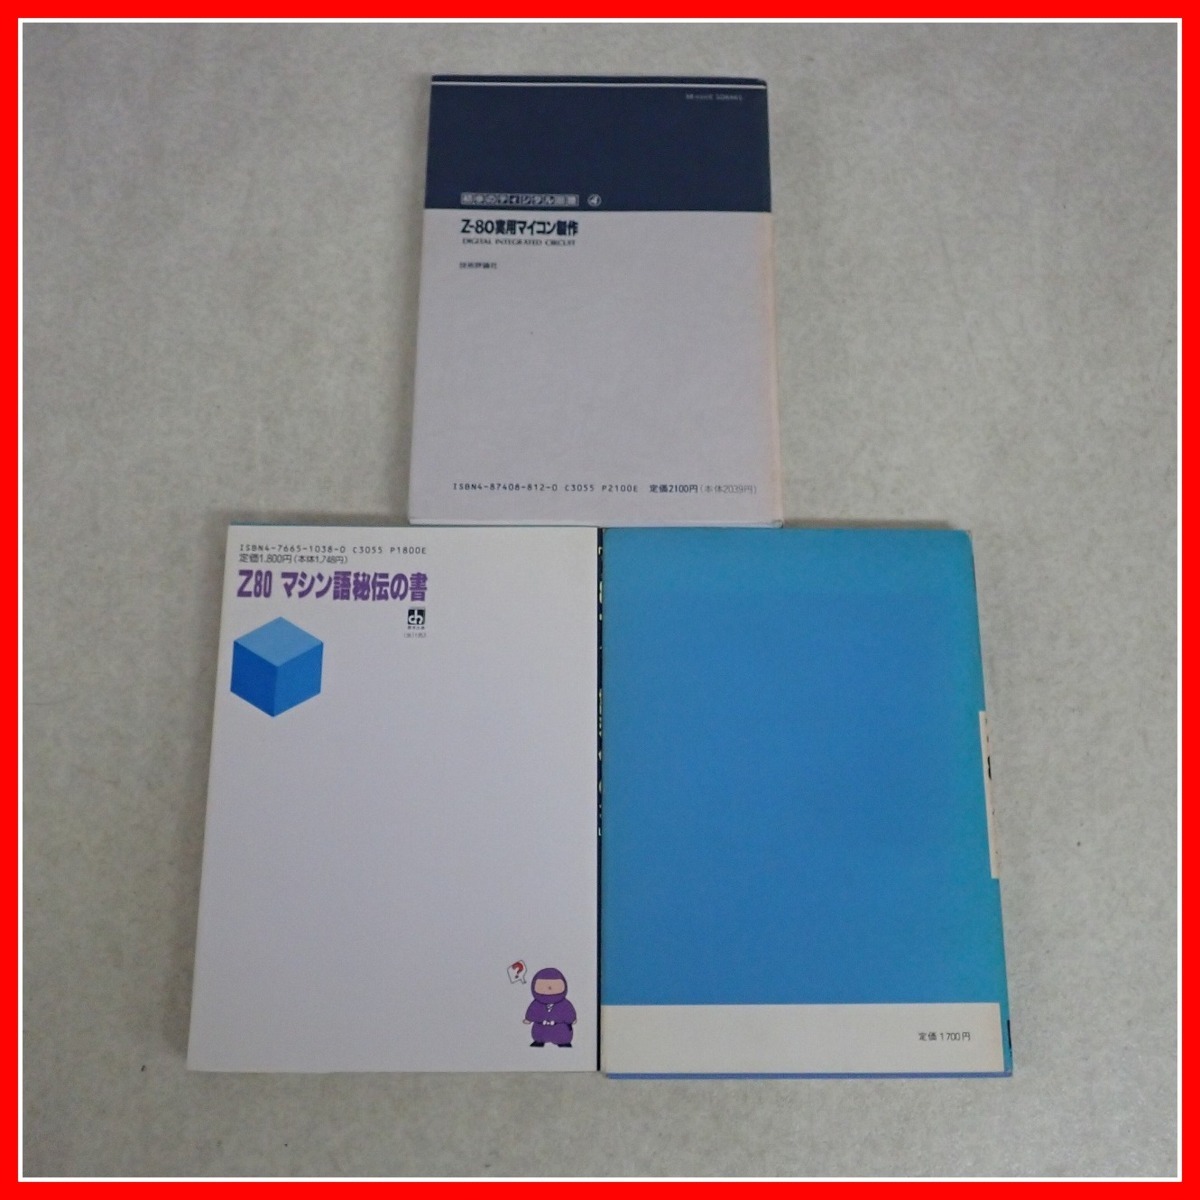 * литература микро компьютер Z80 механизм язык ... документ / семья * рука книжка / program technique и т.п. соответствующие книги совместно 5 шт. комплект [10